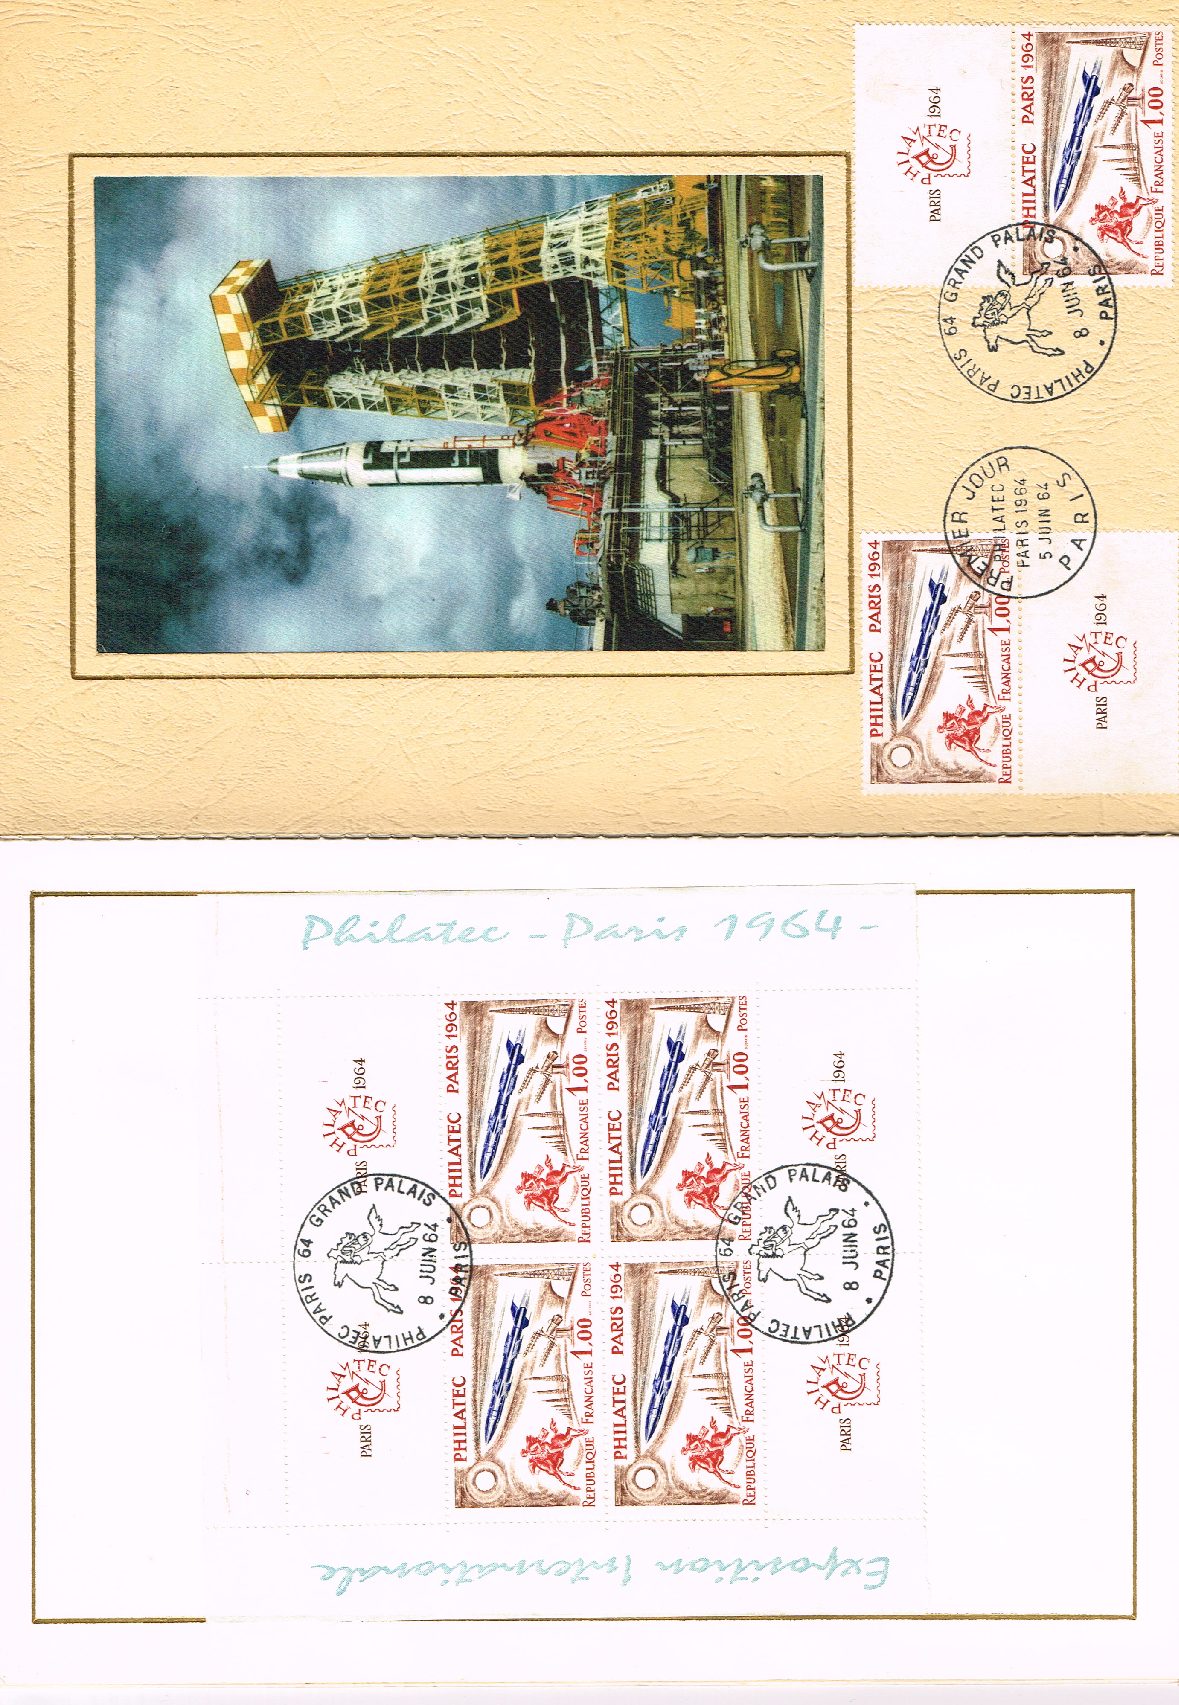 1422 Encart de Luxe Philatec 64 contenant 2 blocs de 4 plus 2 timbres  oblitérés premier jour et cachet illustré - Vincennes Philatélie